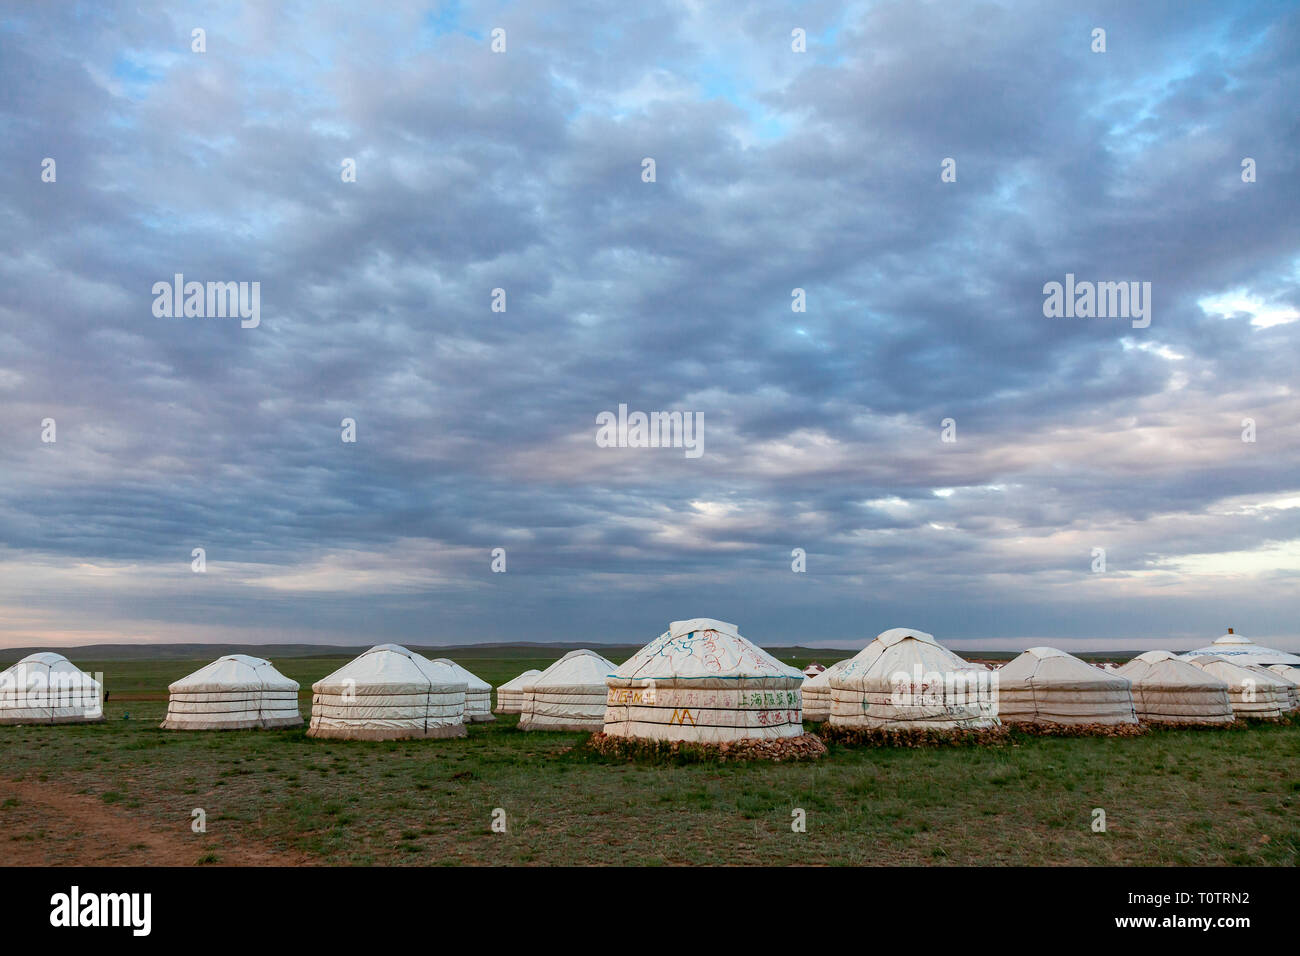 Une ger (yourte) sur le camp des prairies au nord de Gegentala Hohhot en Mongolie intérieure, en Chine. Banque D'Images